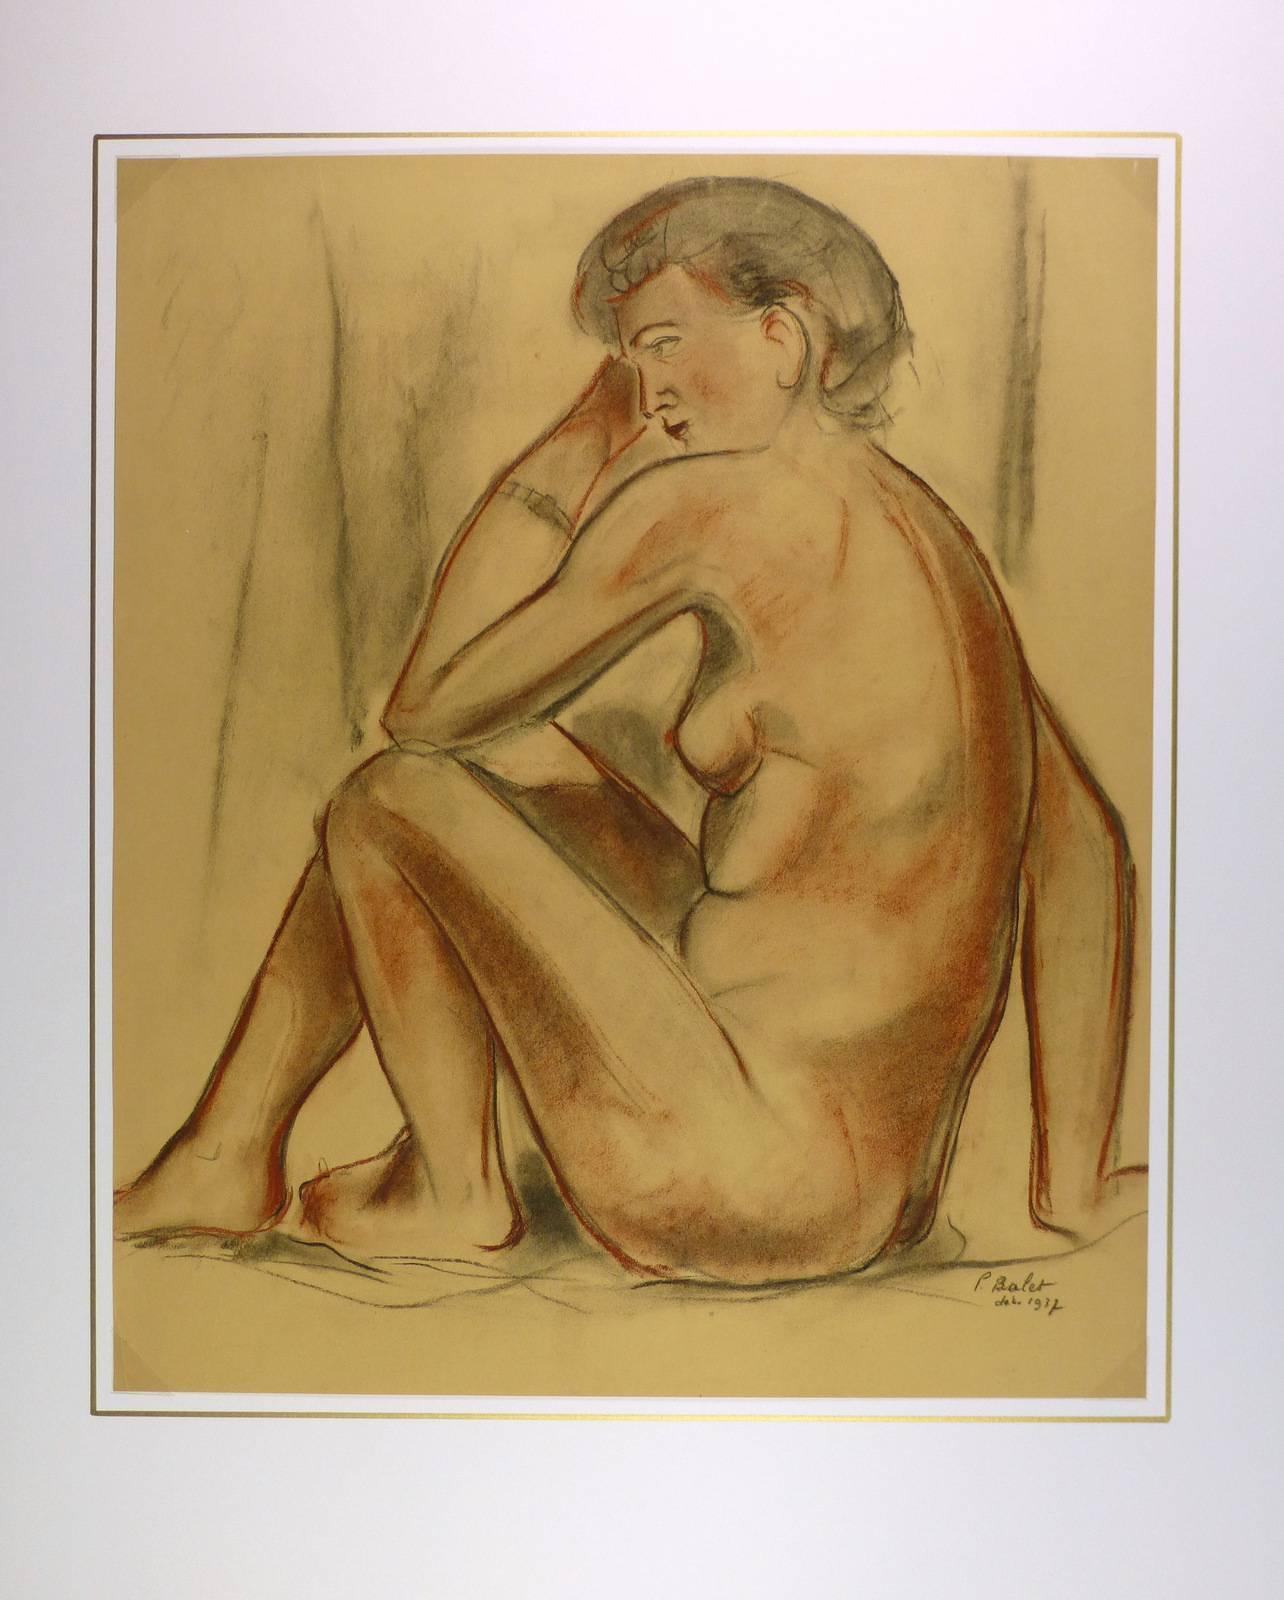 Kohlezeichnung einer nackten Frau, die vor einer Drapierung posiert, vom französischen Künstler P. Balet, 1937. Man beachte die Feinheit der Gesichtskomponenten und die schwachen Züge des Modernismus. Signiert und datiert unten rechts. 